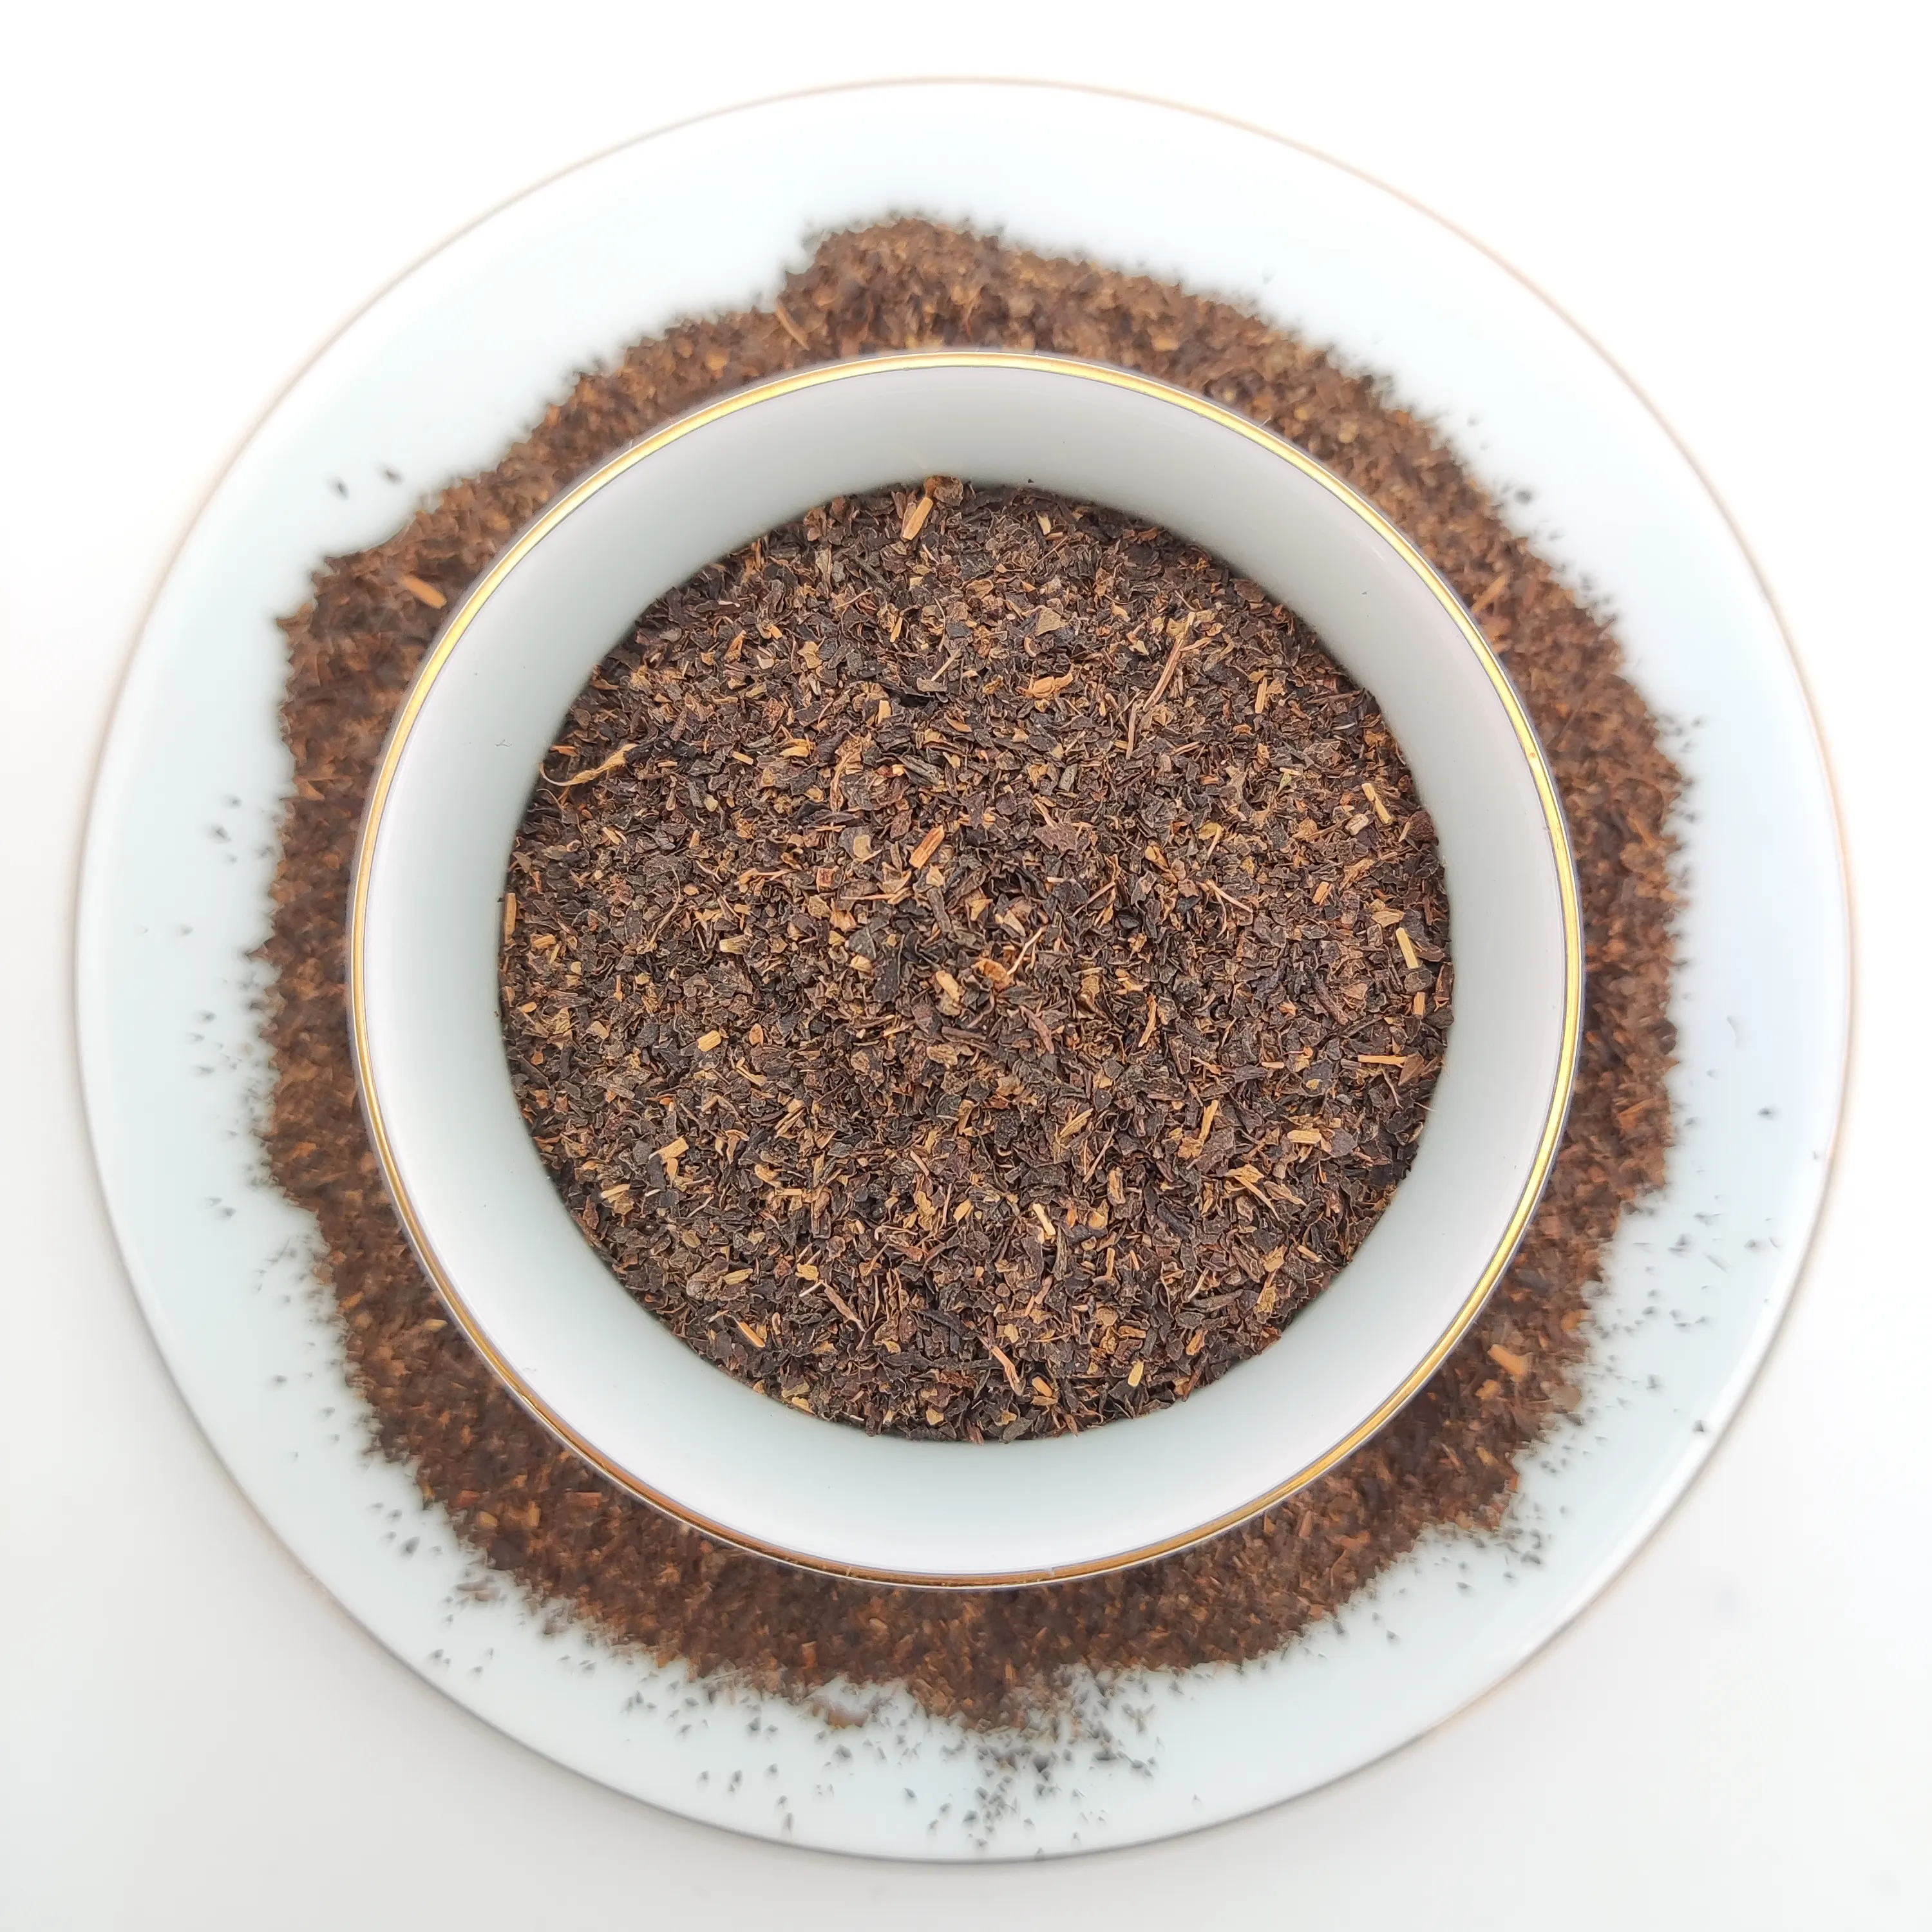 प्रतिस्पर्धी मूल्य और उच्च गुणवत्ता वाली काली चाय कार्बनिक ctc काली चाय की धूल टी